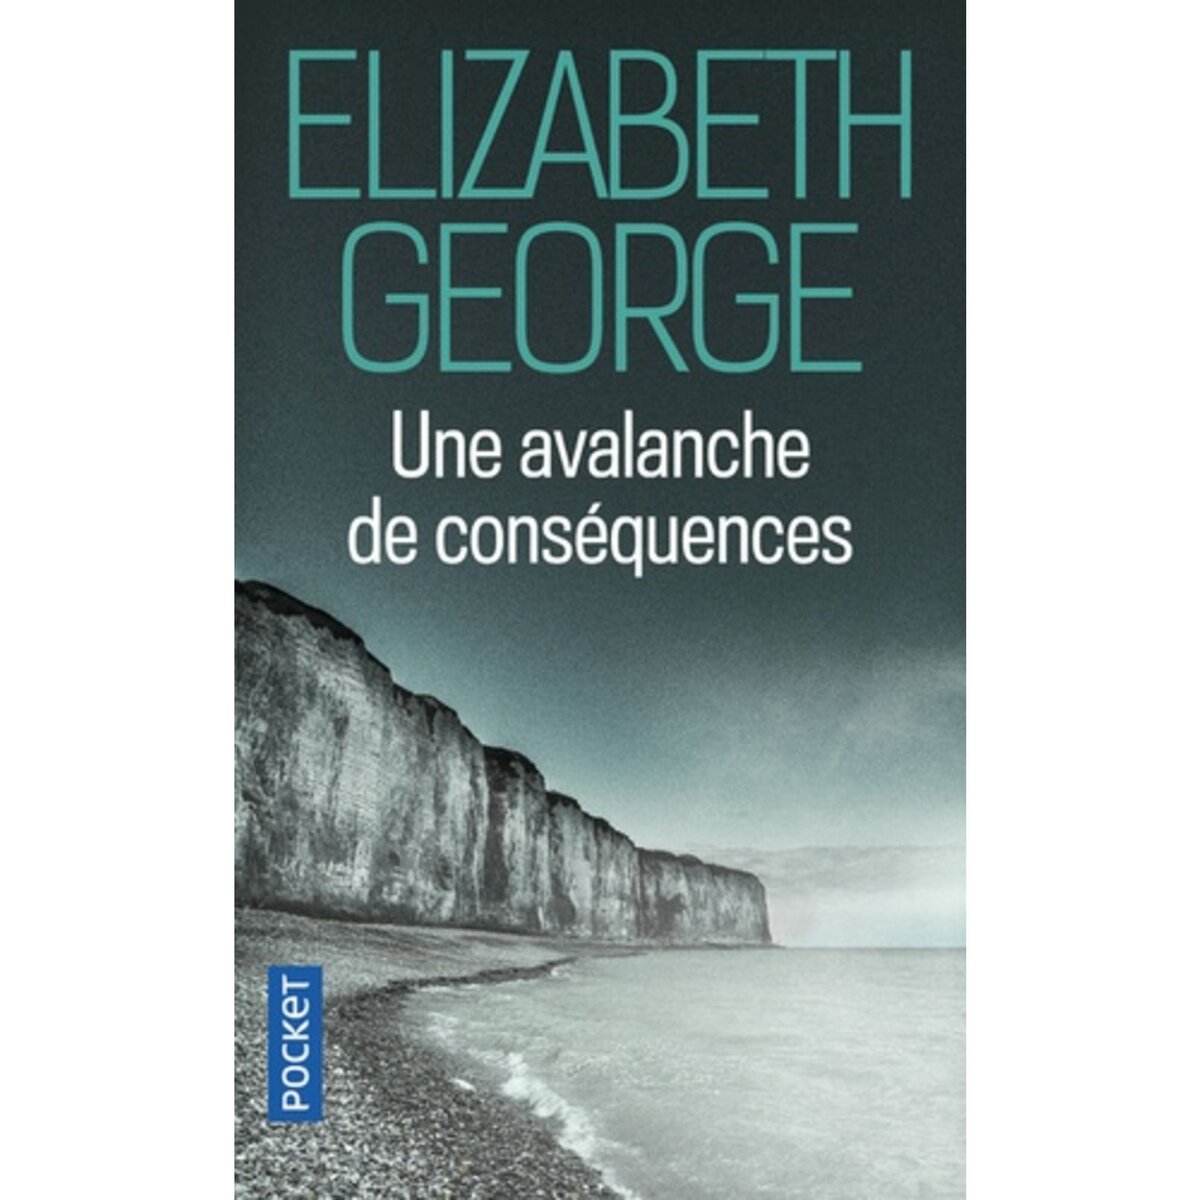  UNE AVALANCHE DE CONSEQUENCES, George Elizabeth